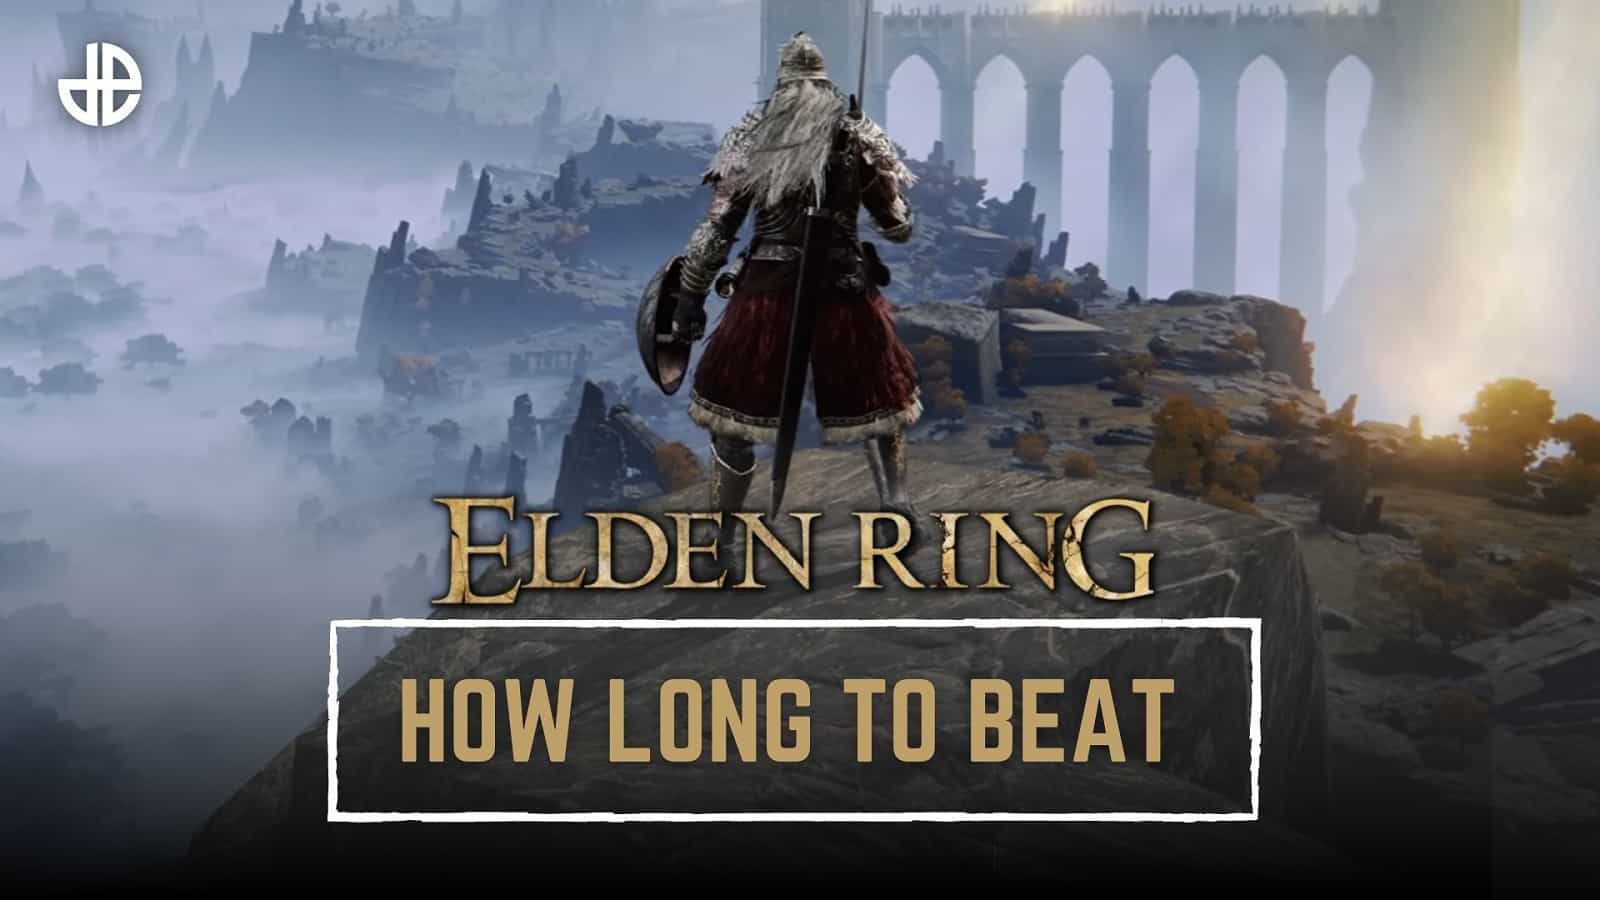 Canto tempo para bater Elden Ring